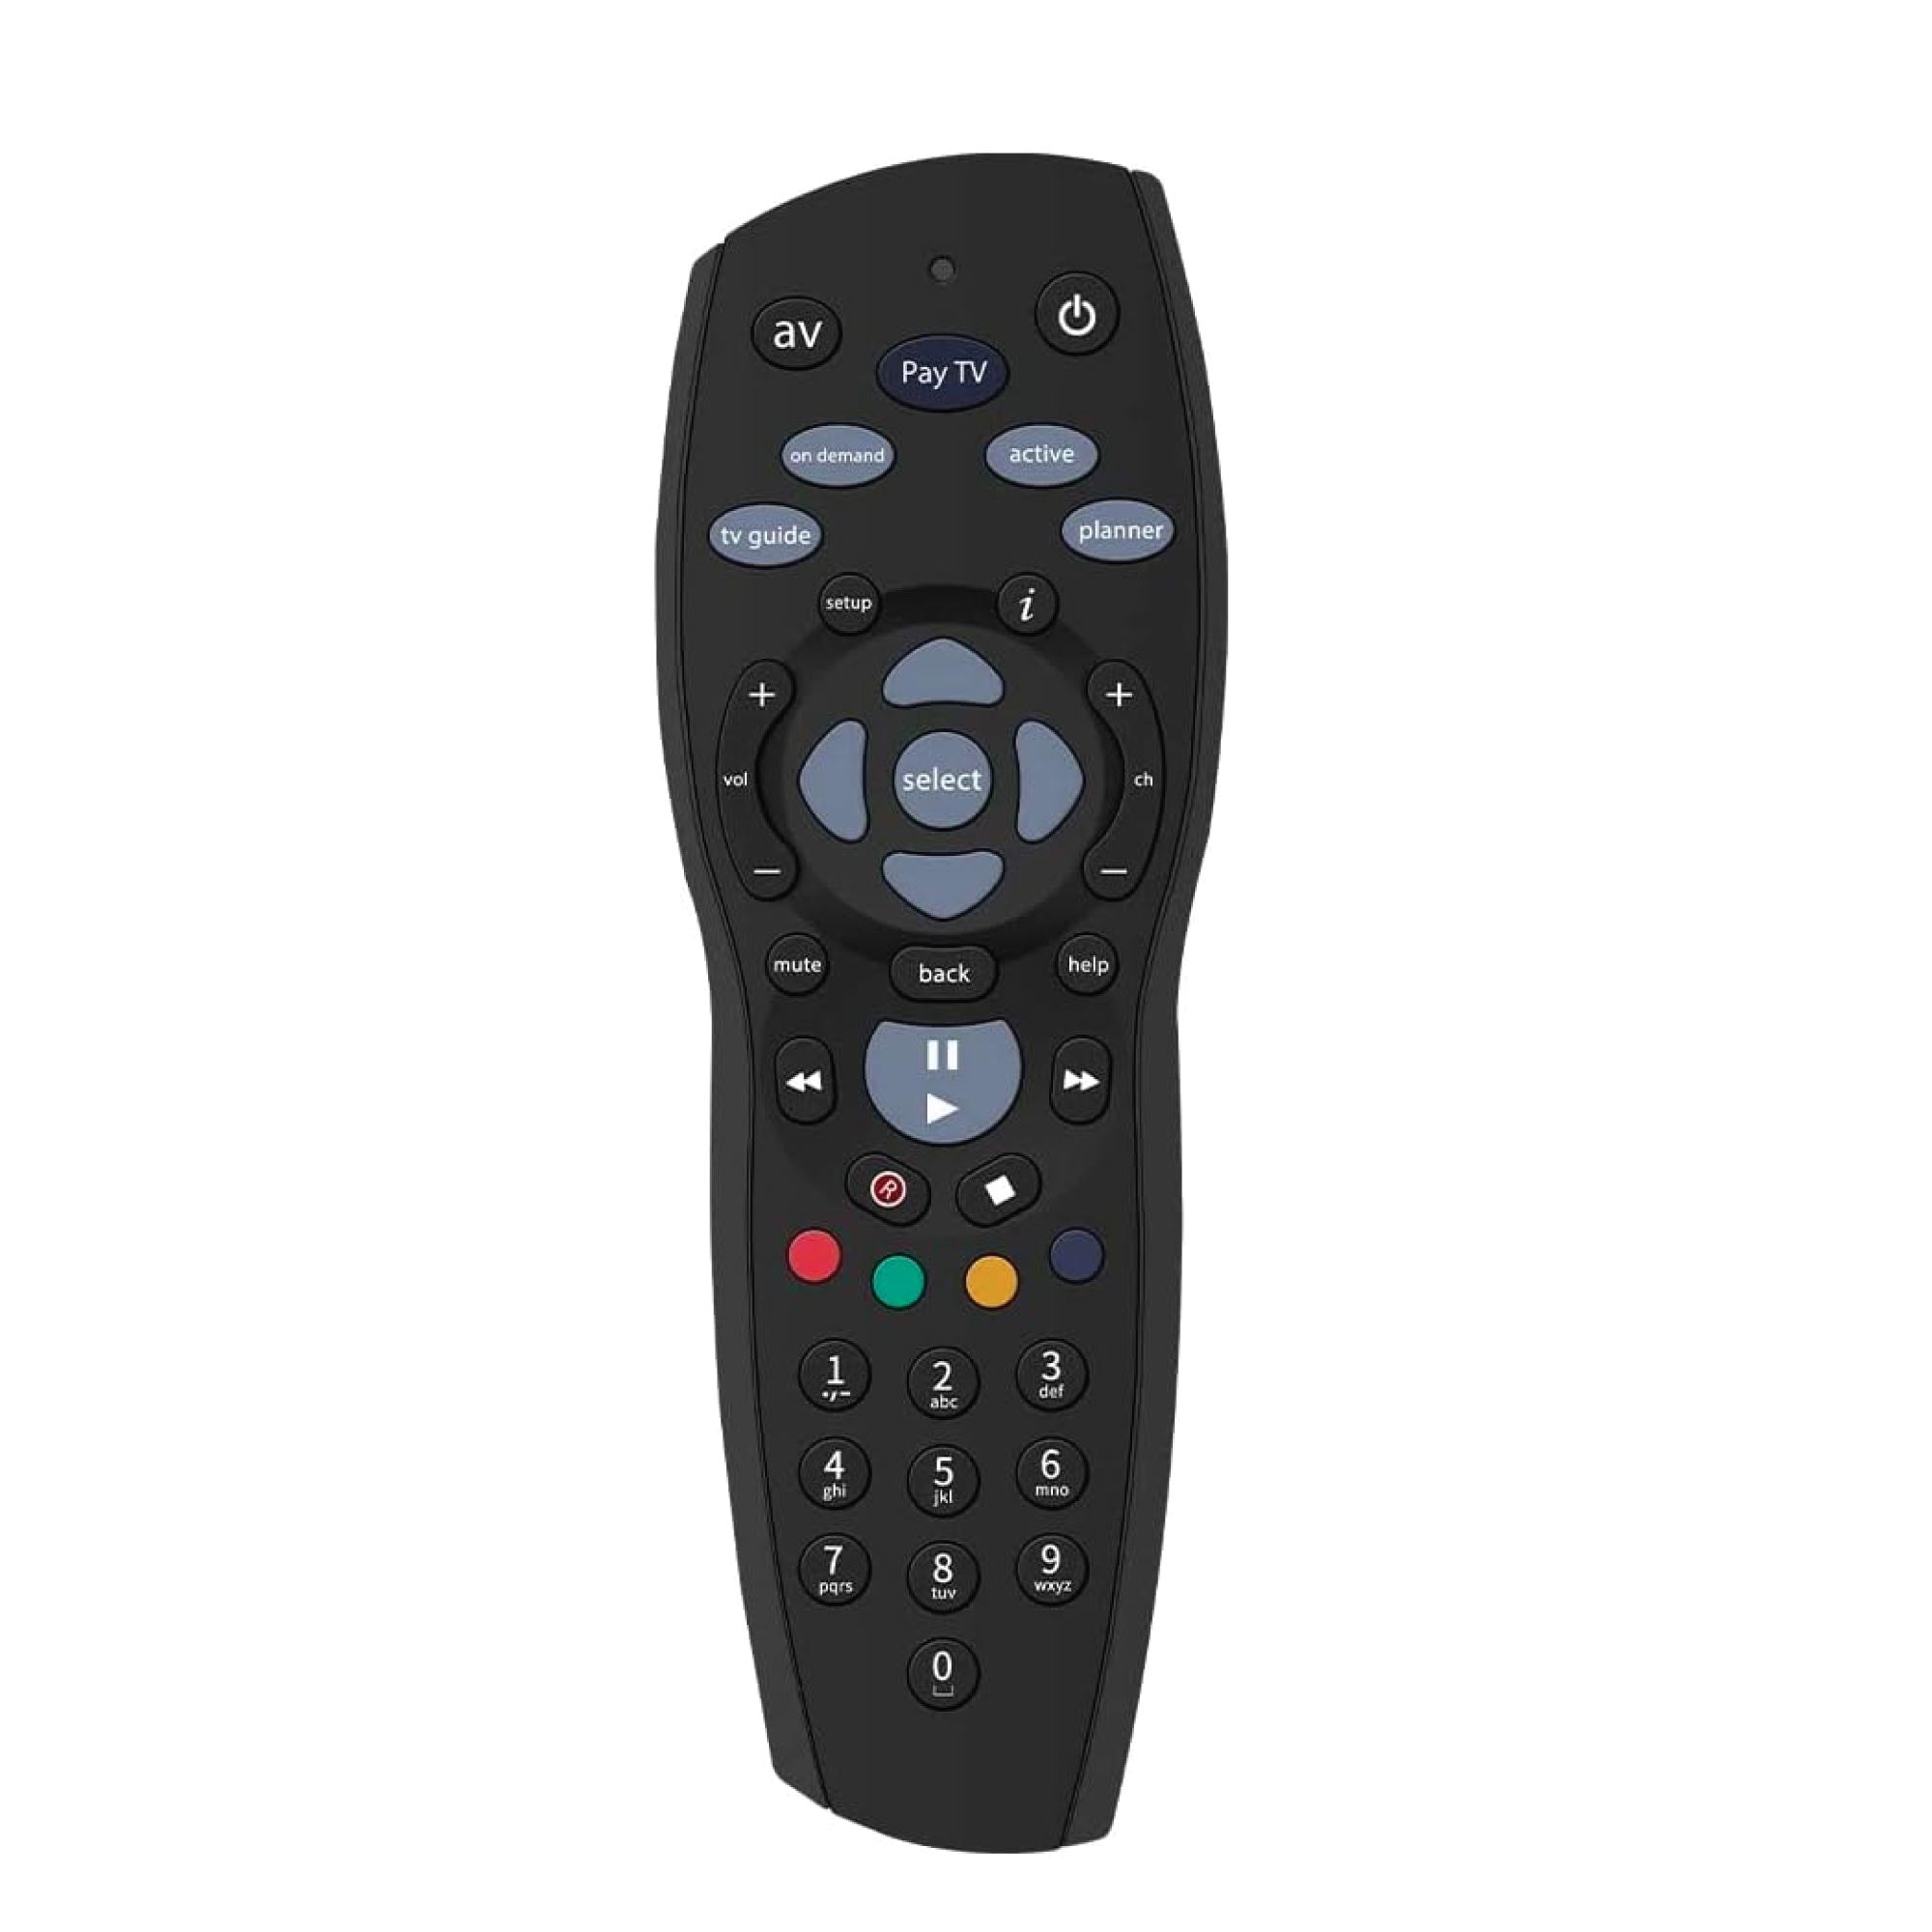 PAYTV Foxtel Remote Control Compatible Replacement Standard IQ IQ2 IQ3 IQ4 HD - Black